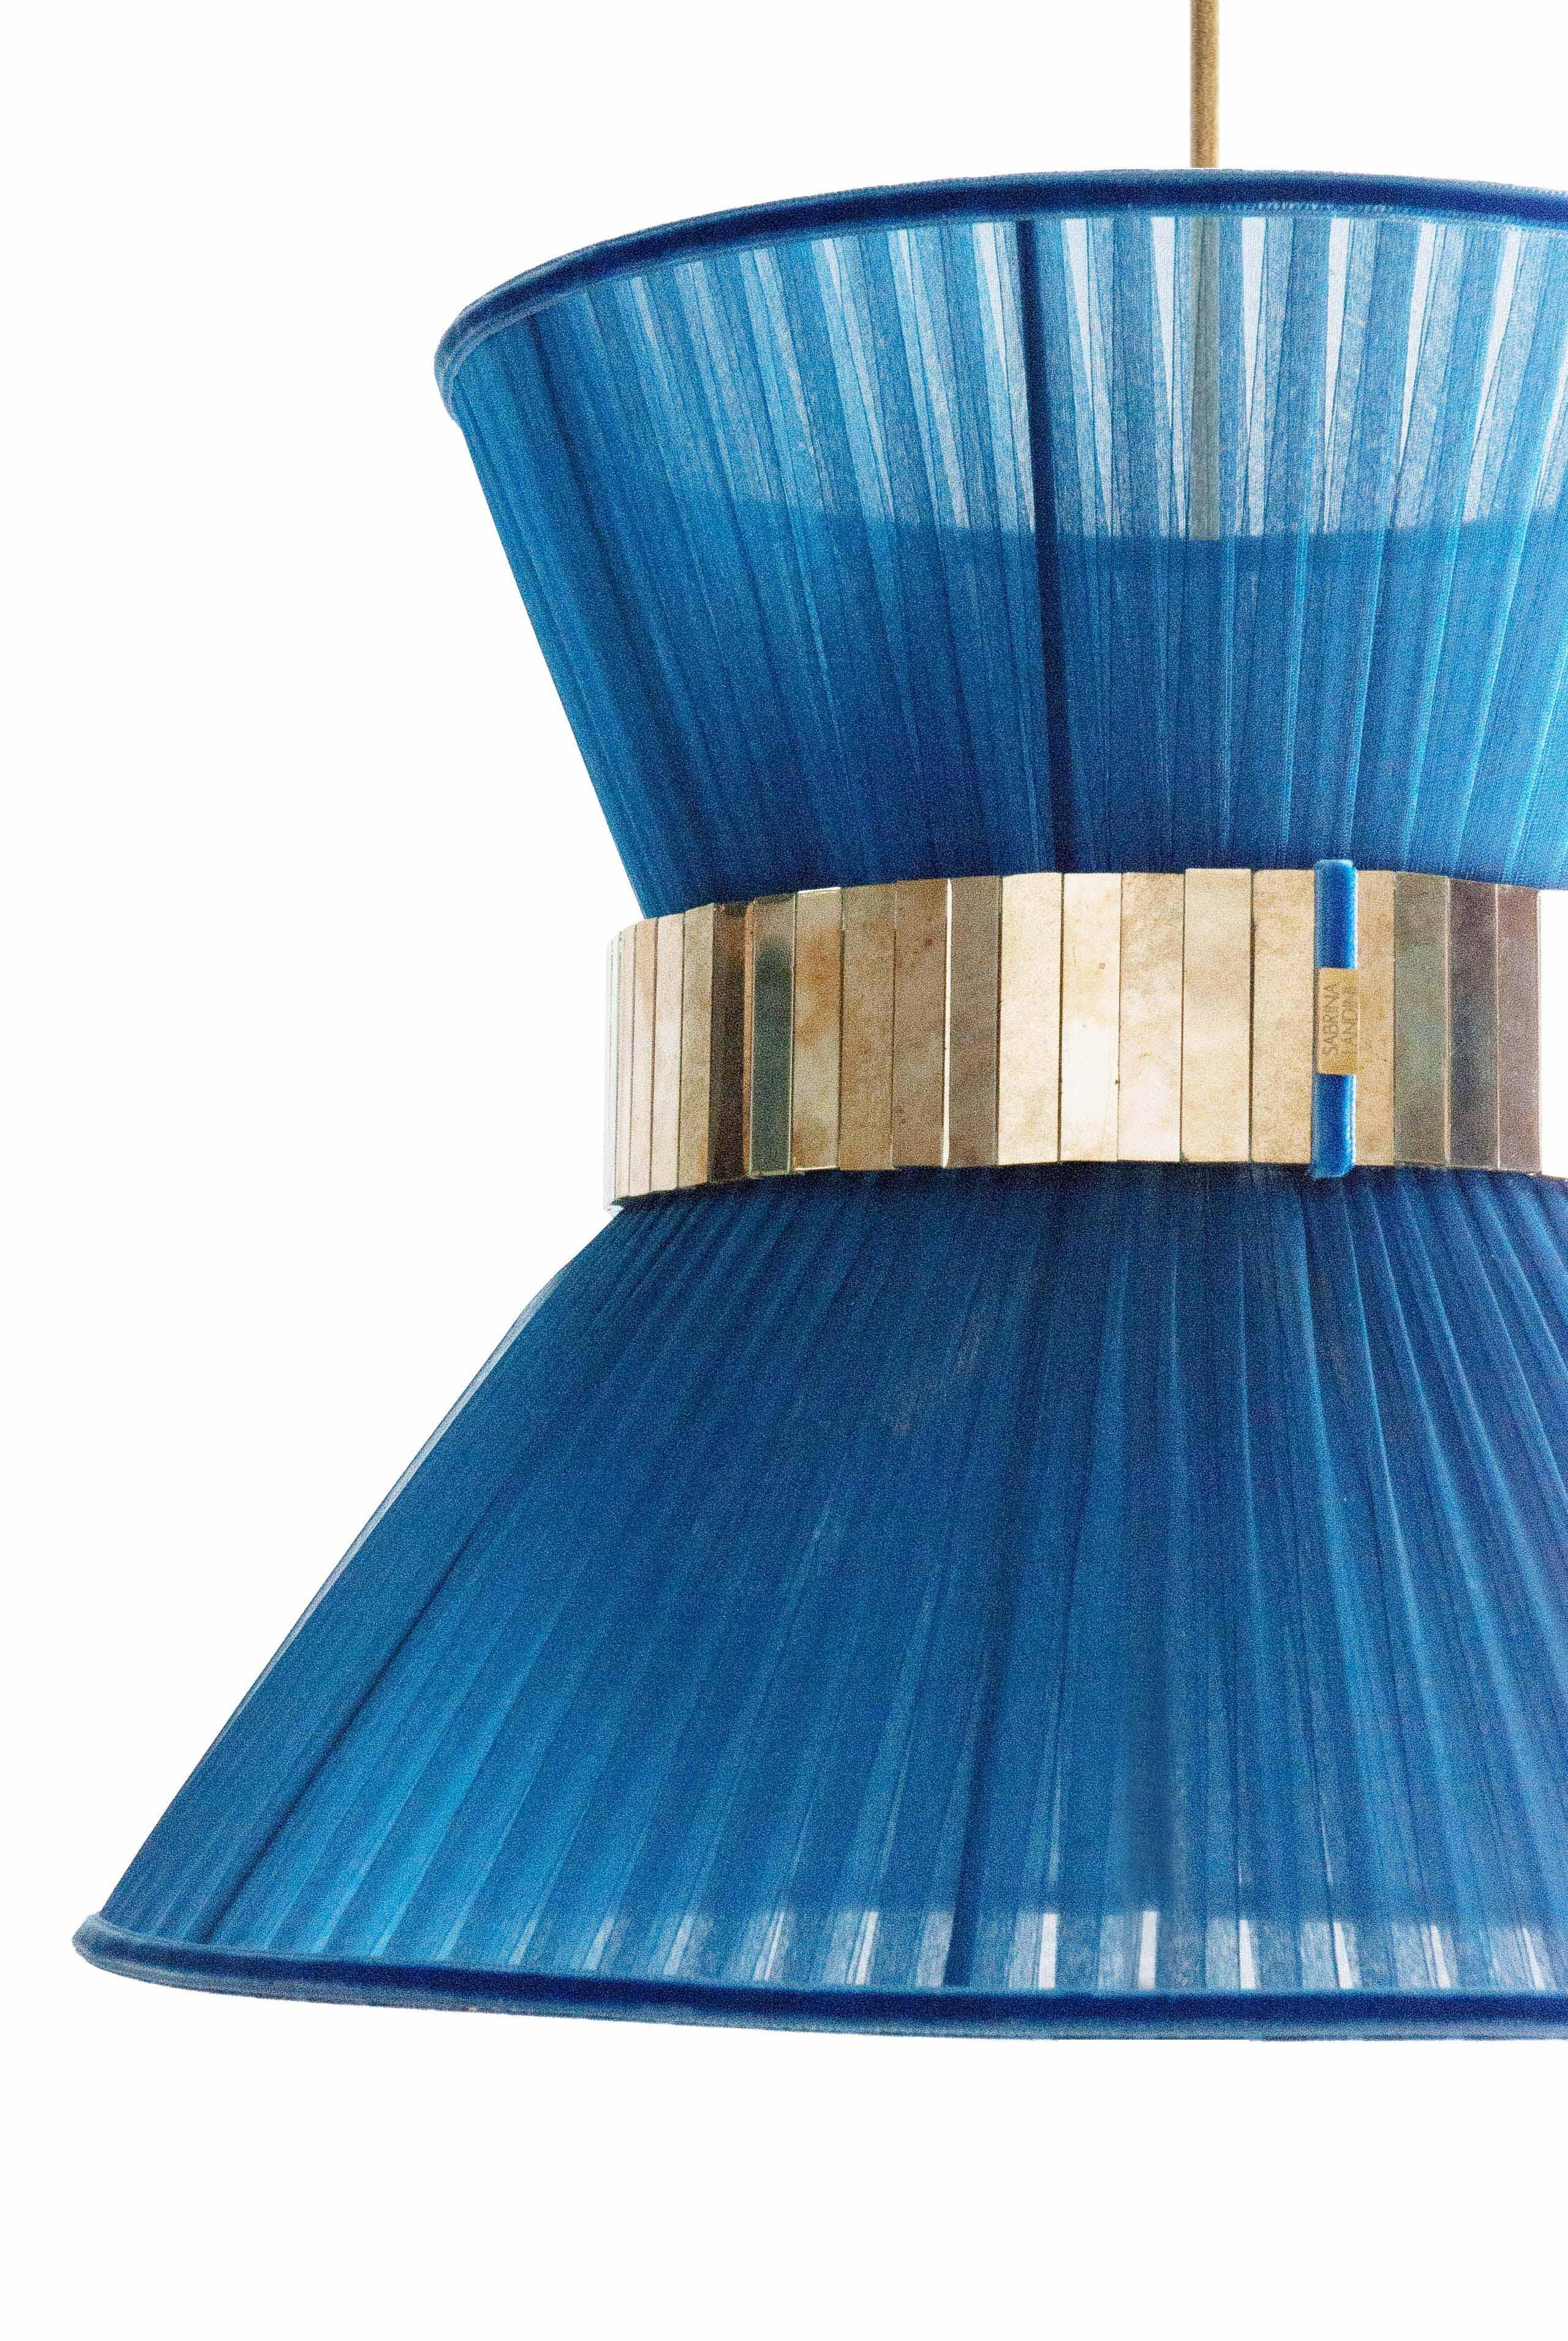 TIFFANY die kultige Lampe!

Seit 20 Jahren haben wir unsere einzigartige Herstellungsmethode beibehalten. Inspiriert von den unbegrenzten Spiegelungen im Glas hat Sabrina Landini eine elegante Wohnkollektion entworfen.
Falls Sie sich in der Toskana